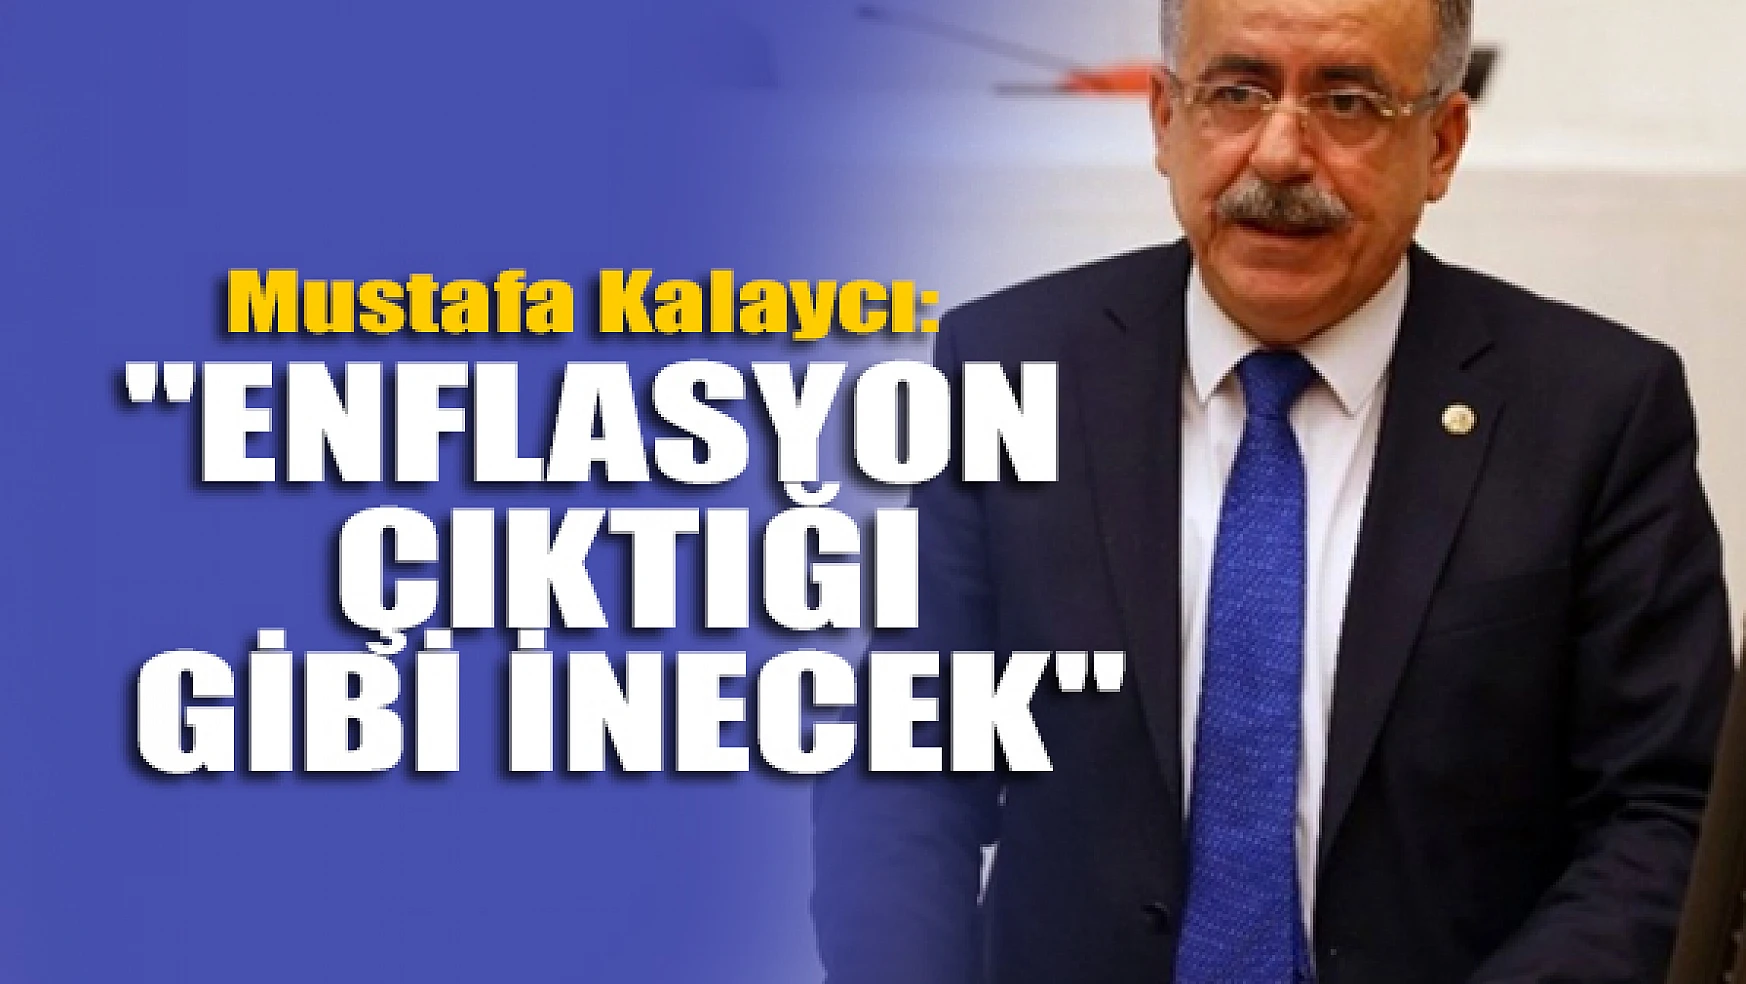 Mustafa Kalaycı: 'Enflasyon çıktığı gibi inecek'